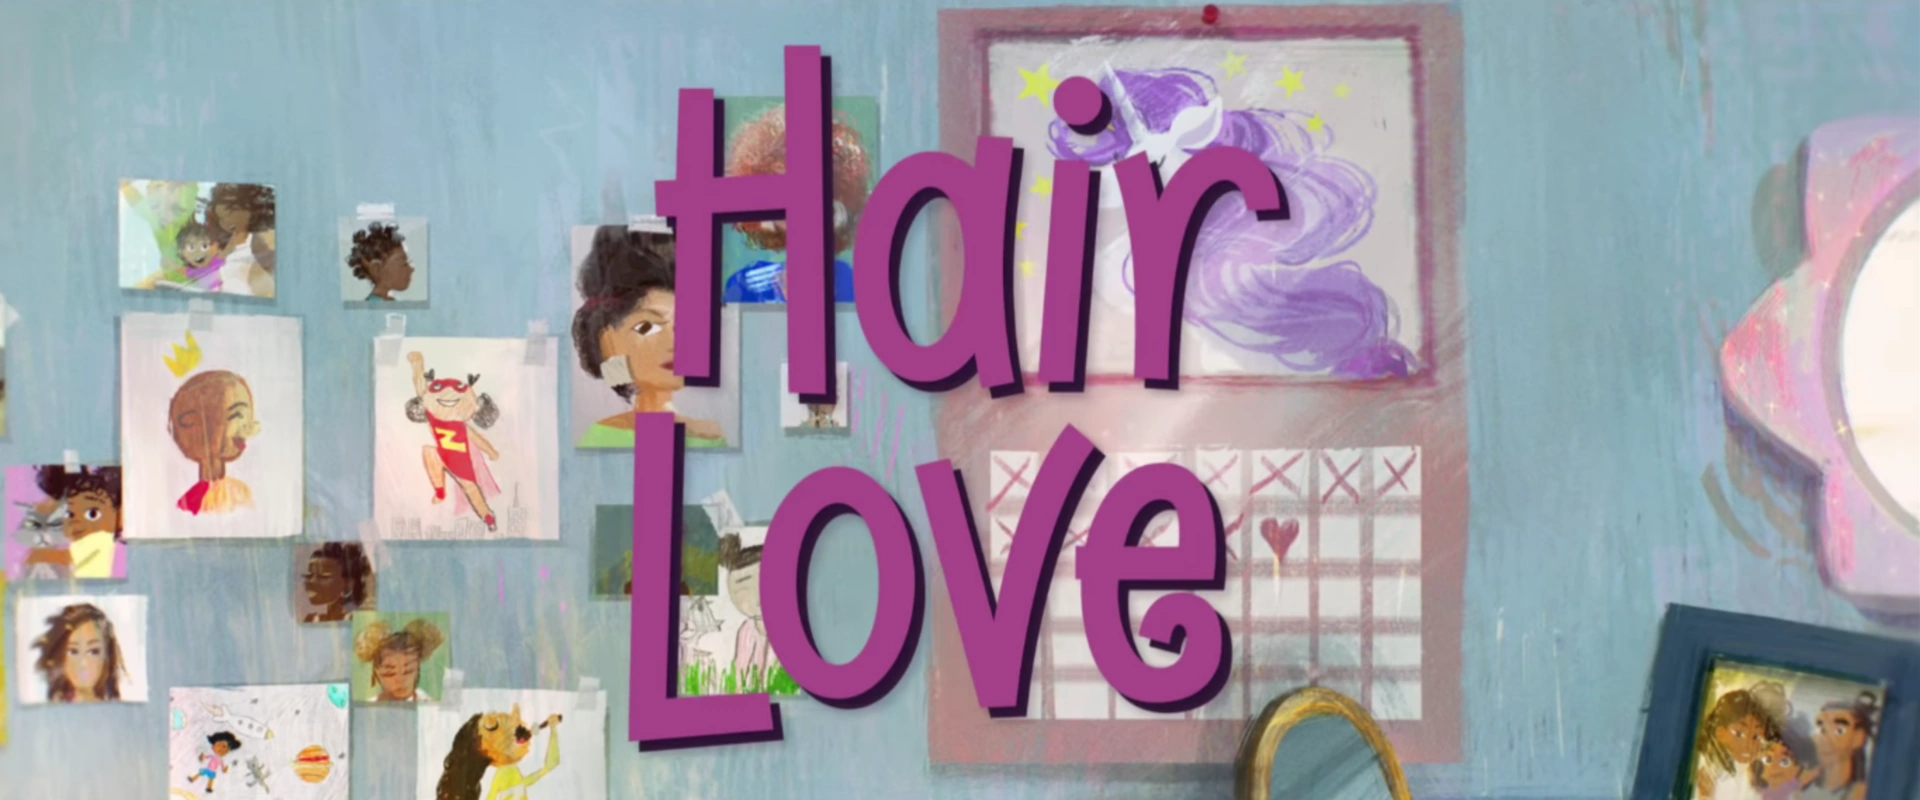 Hair_Love animatie de Oscar